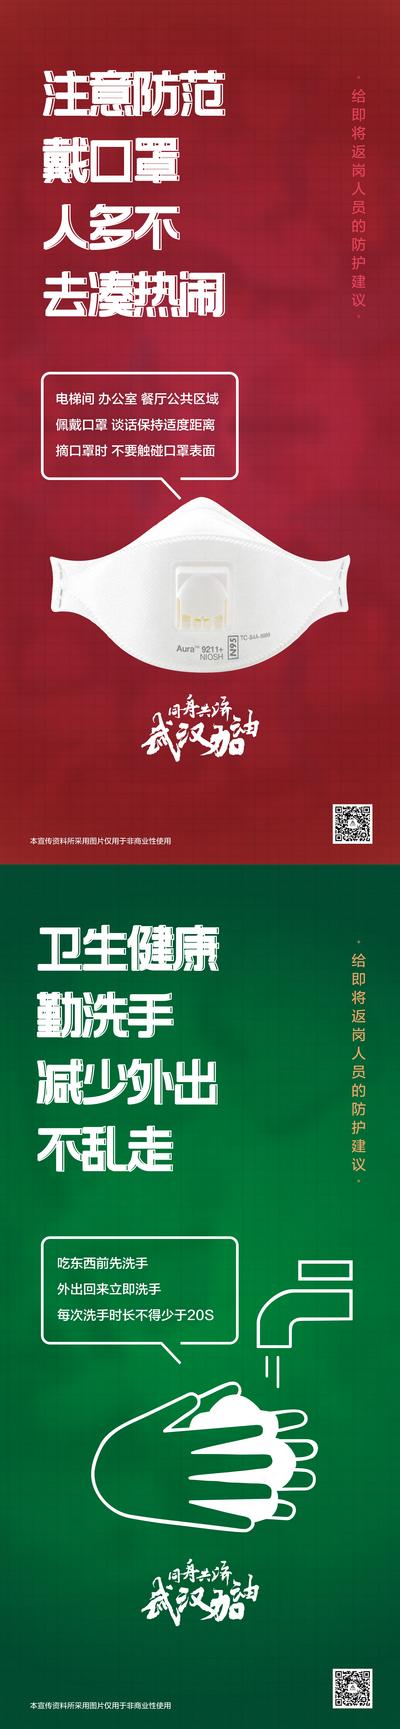 南门网 海报 武汉加油 抗疫情 防范 戴口罩 勤洗手 